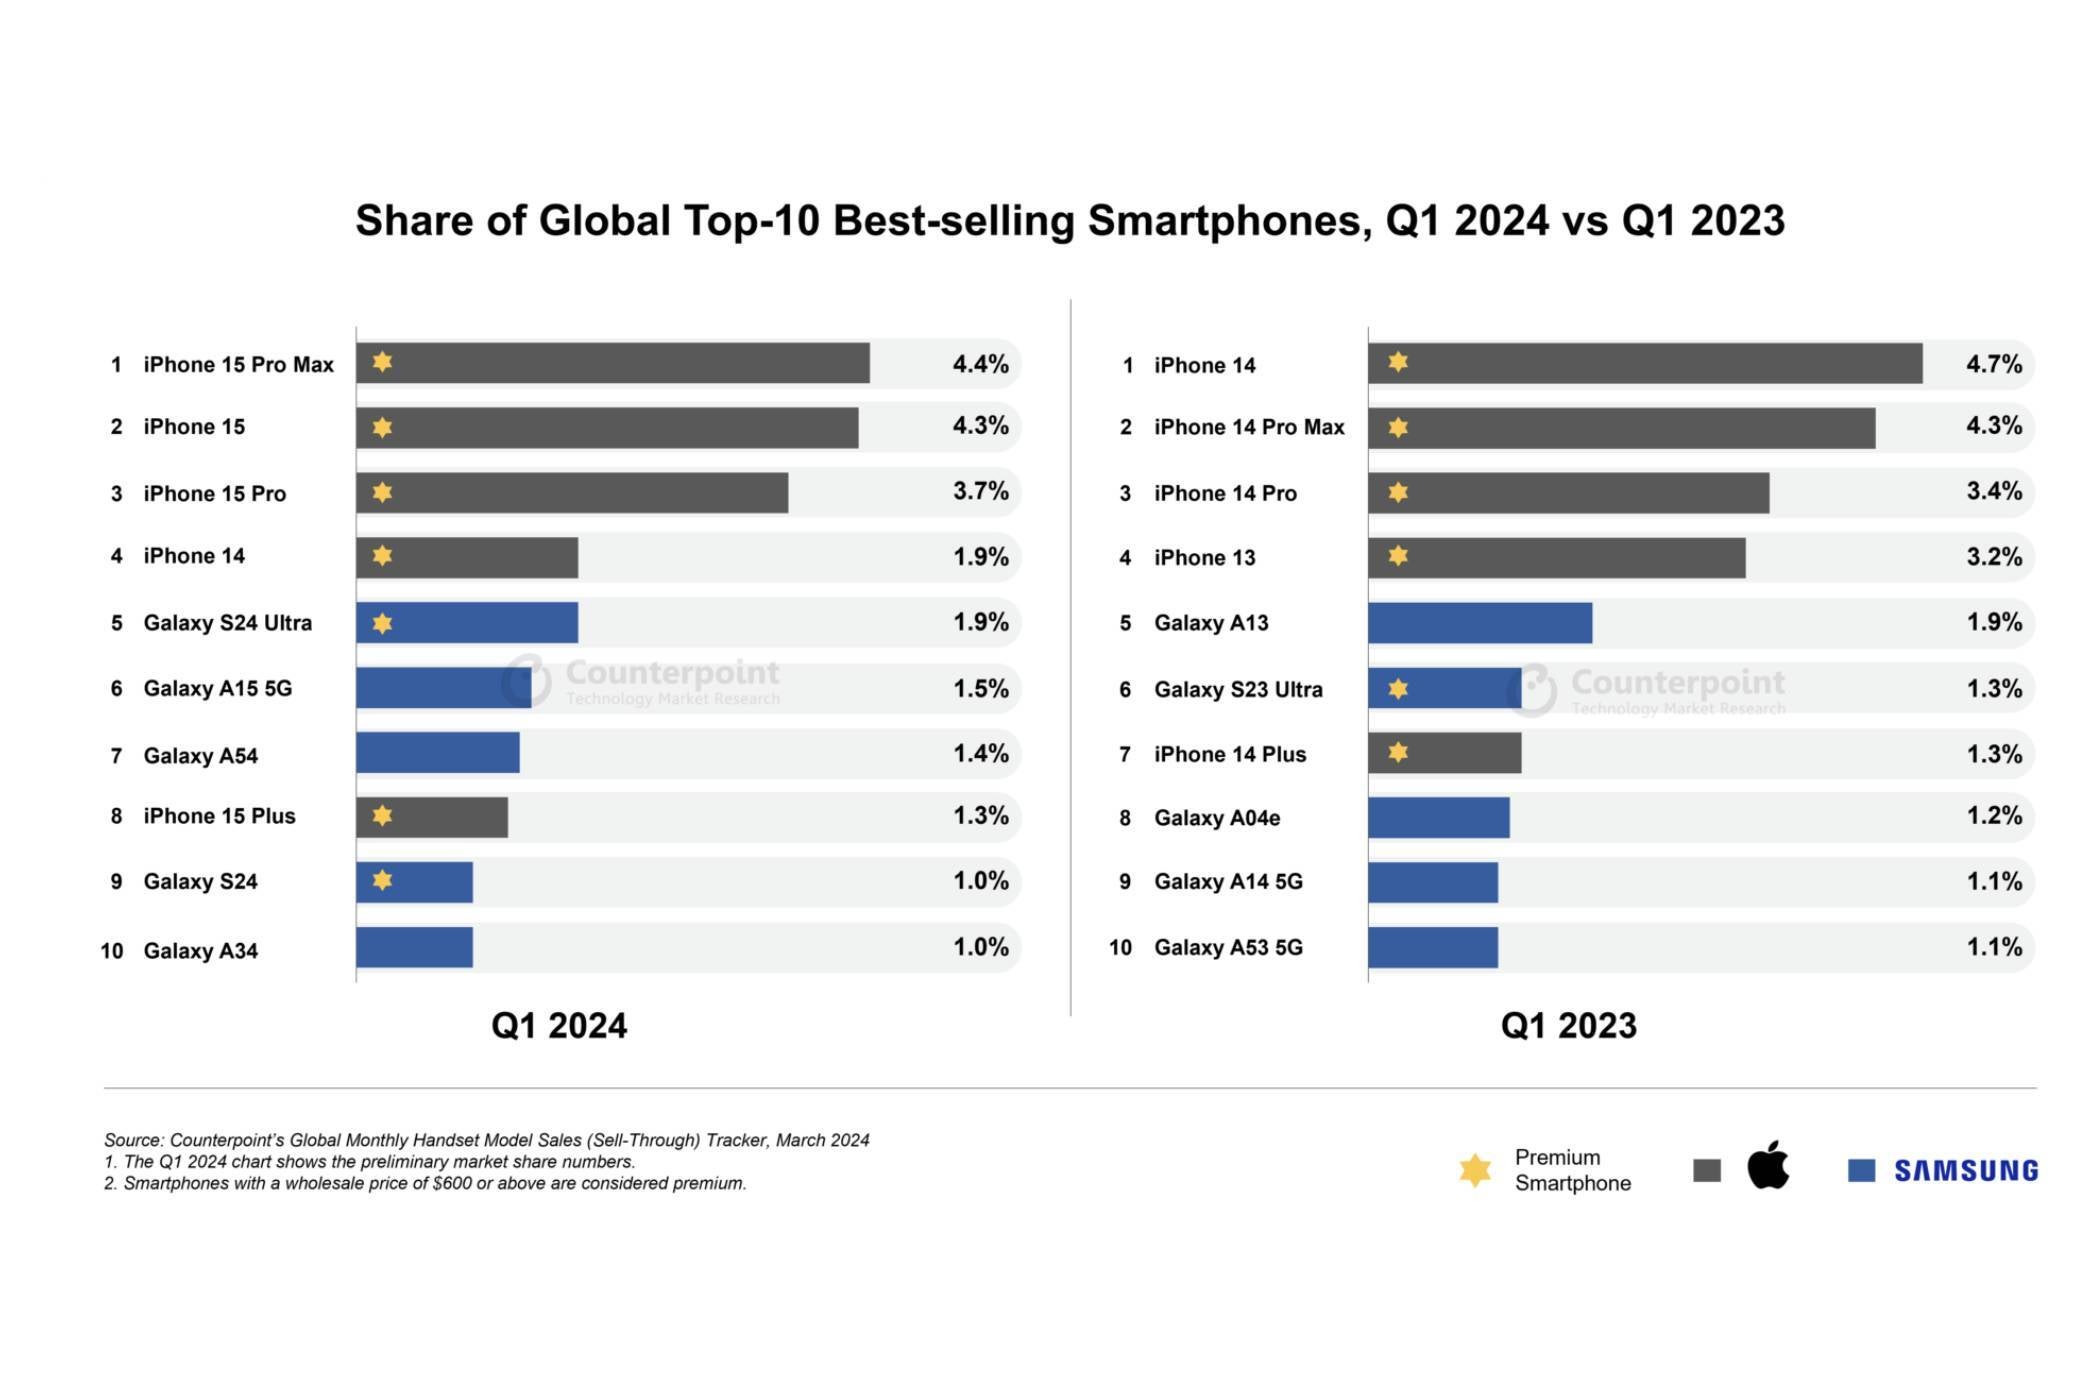 Apesar de todas as probabilidades, o iPhone 15 Pro Max foi o telefone mais vendido no primeiro trimestre de 2024